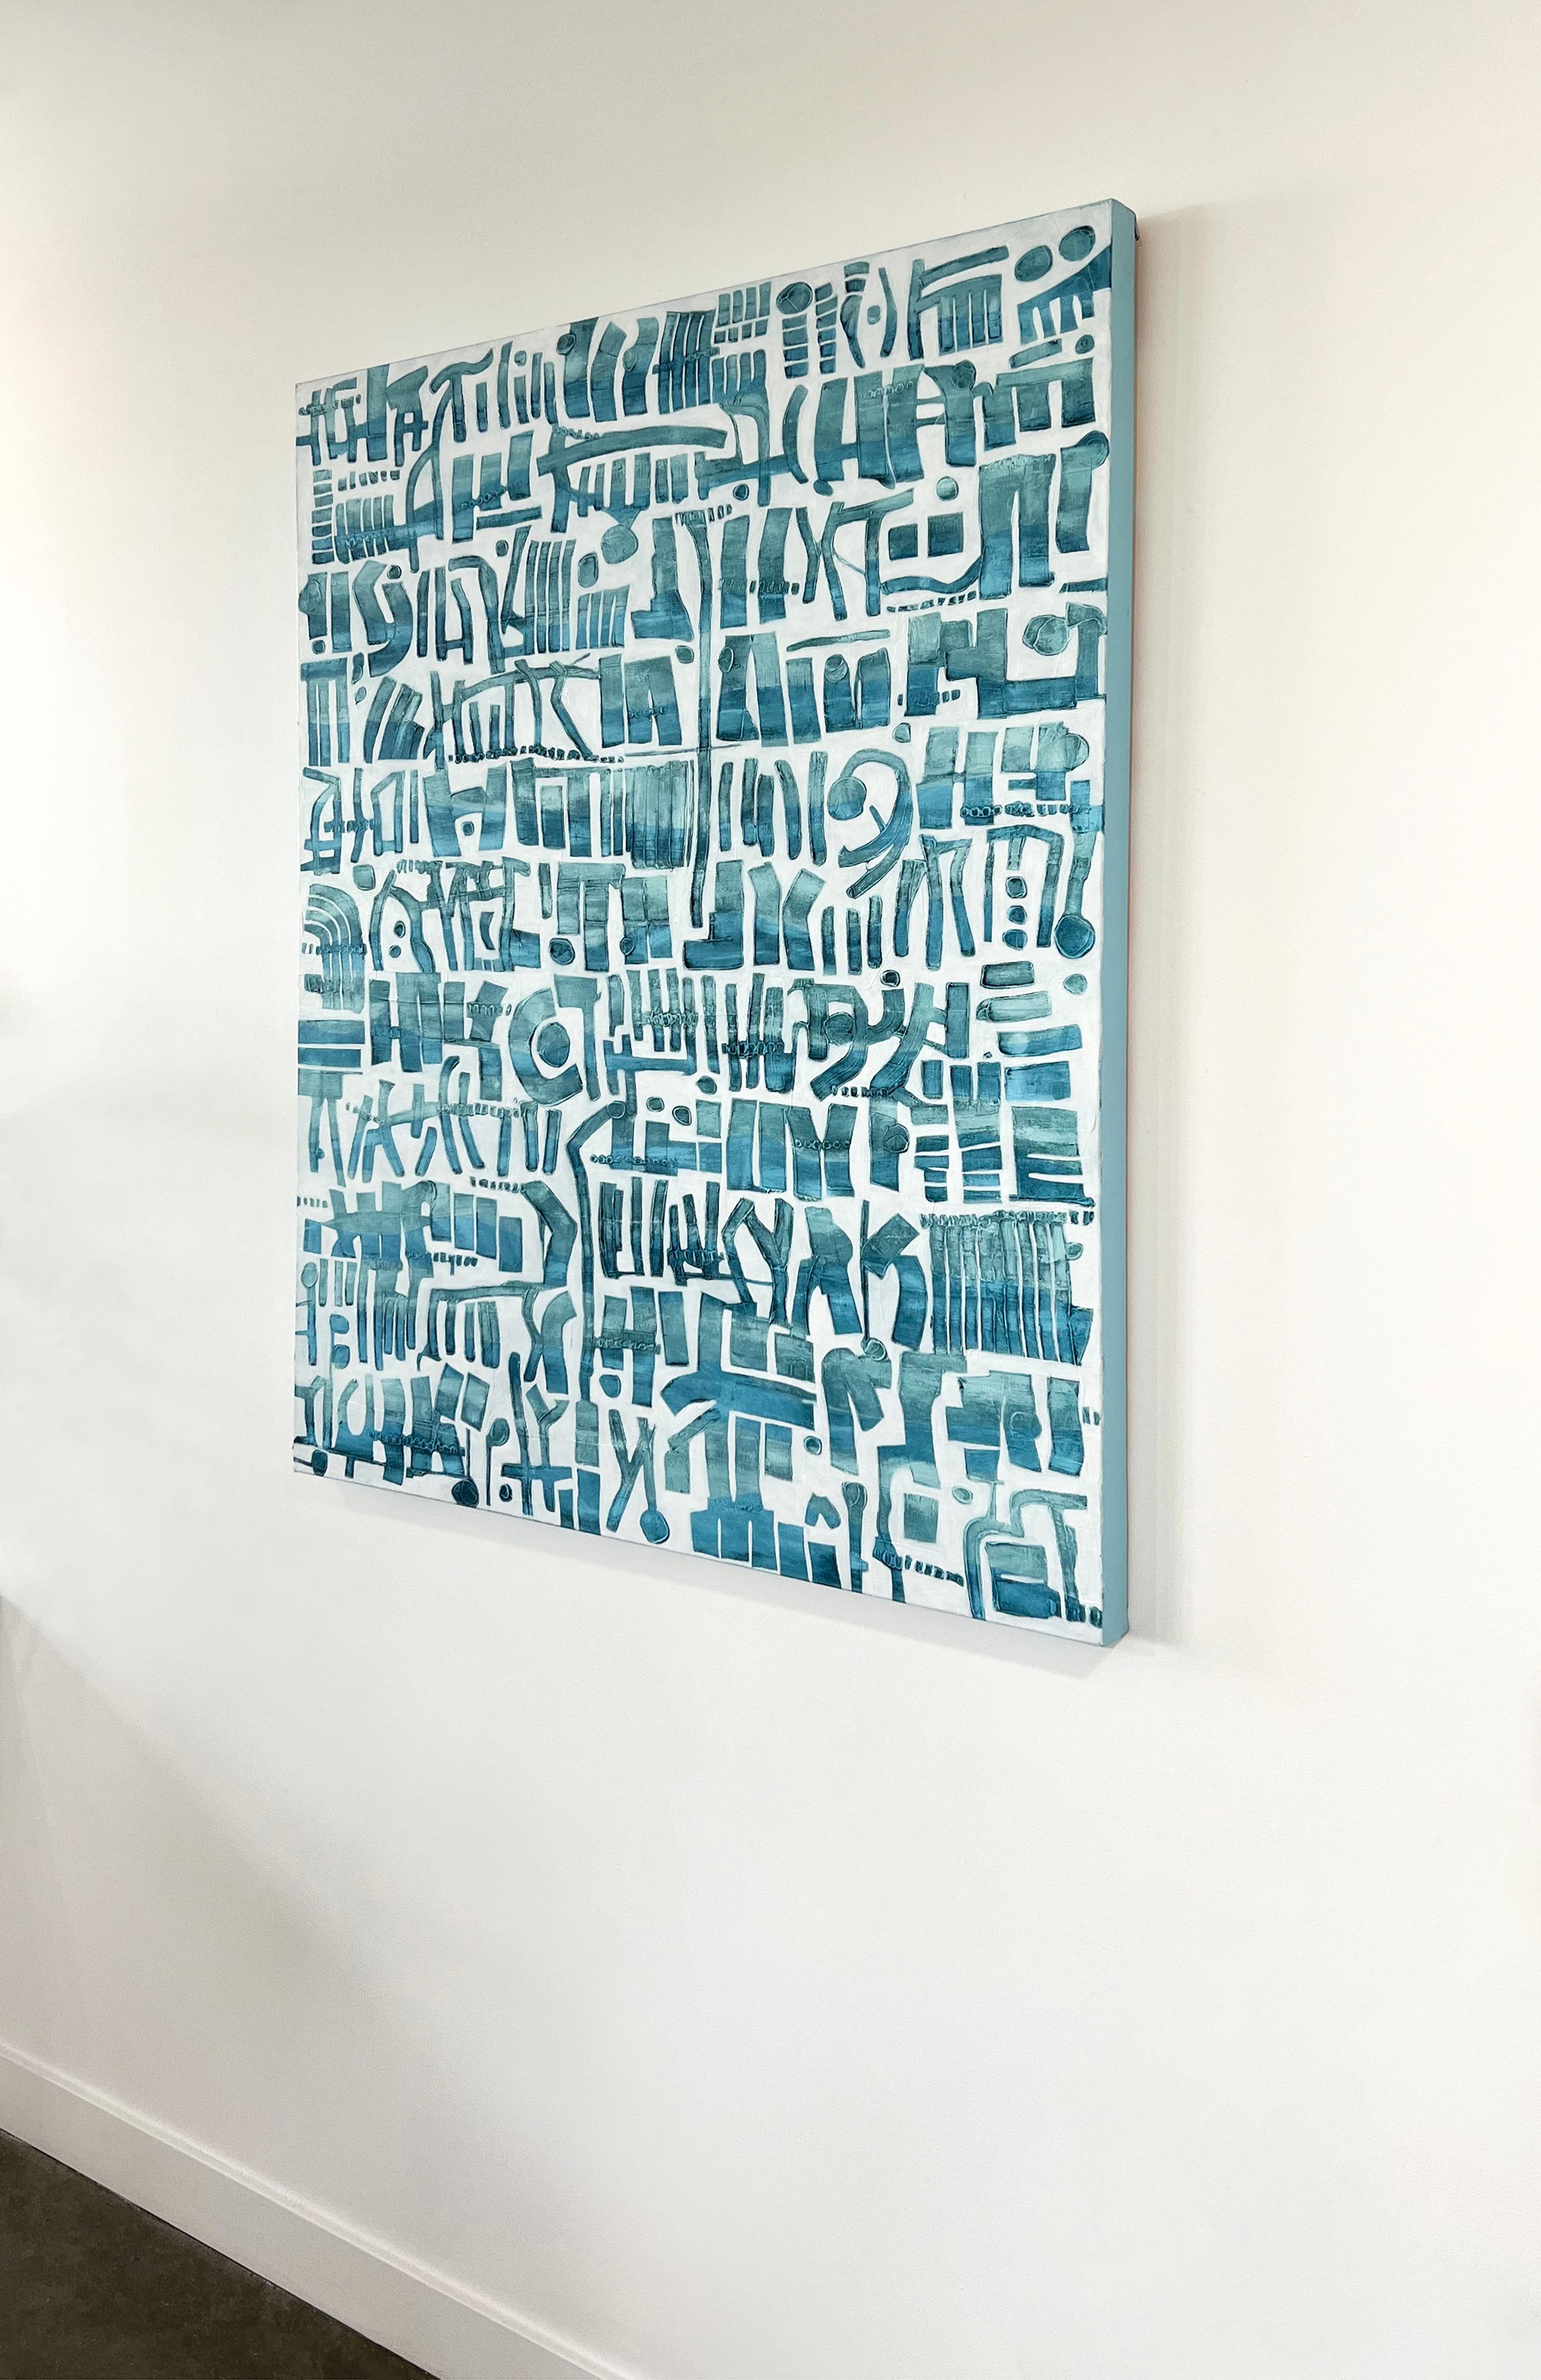 Dieses große abstrakte Gemälde von Sofie Swann ist mit Acrylfarbe auf mit der Galerie umwickelter Leinwand gefertigt. Er zeichnet sich durch eine helle, coastalfarbene Farbpalette aus, in der blaue, organische Formen nebeneinander gestapelt und auf